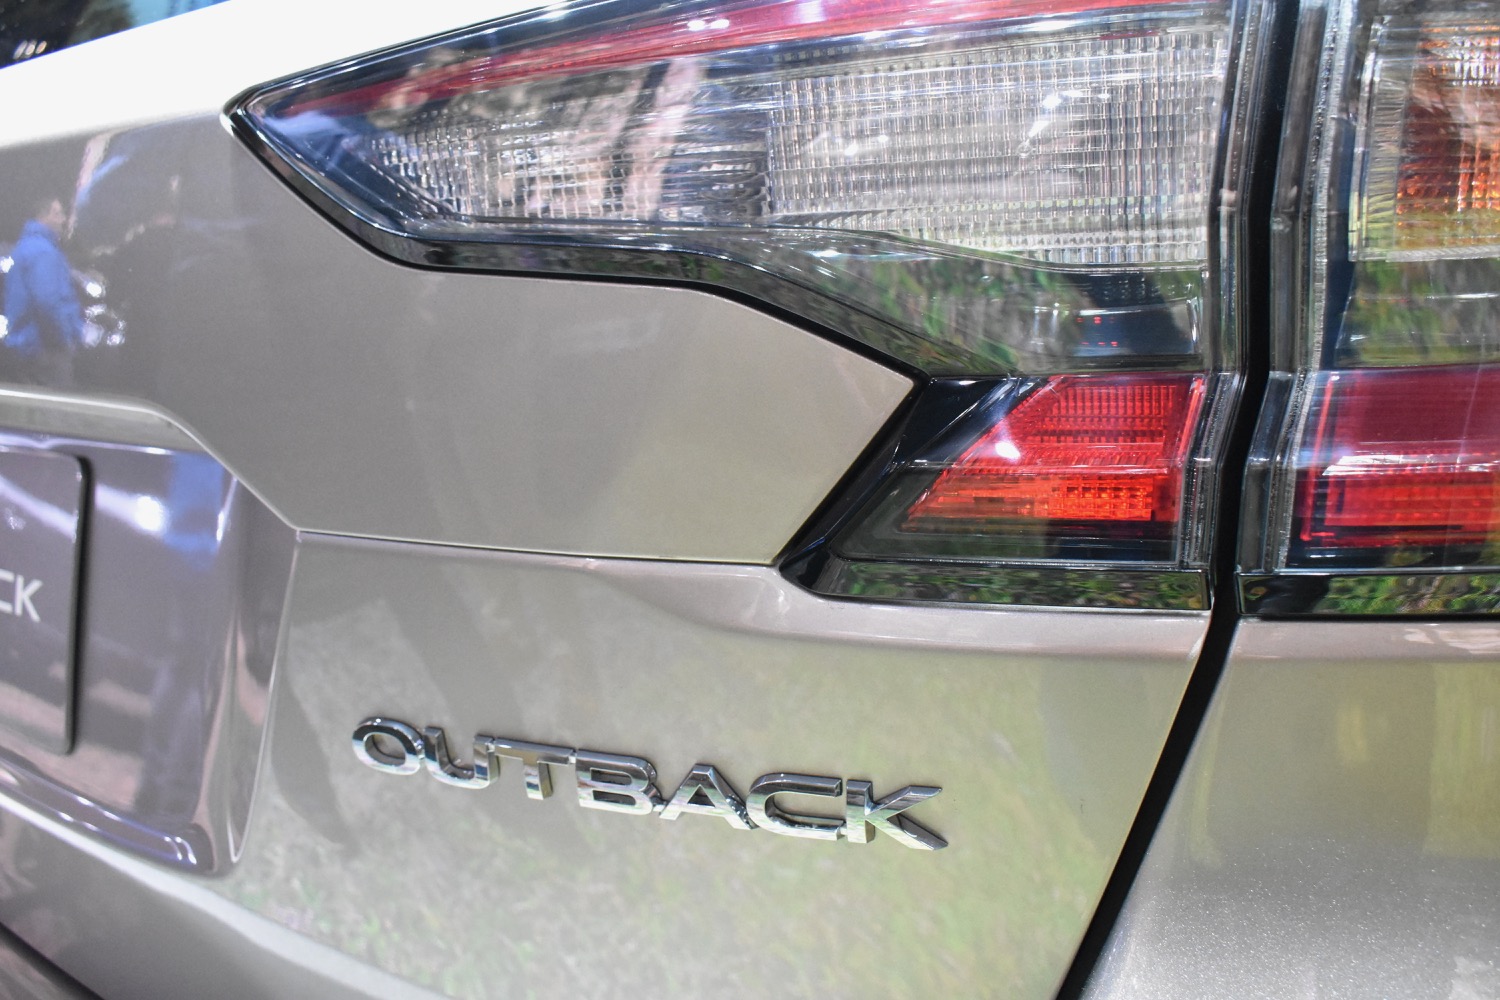 2020 Subaru Outback